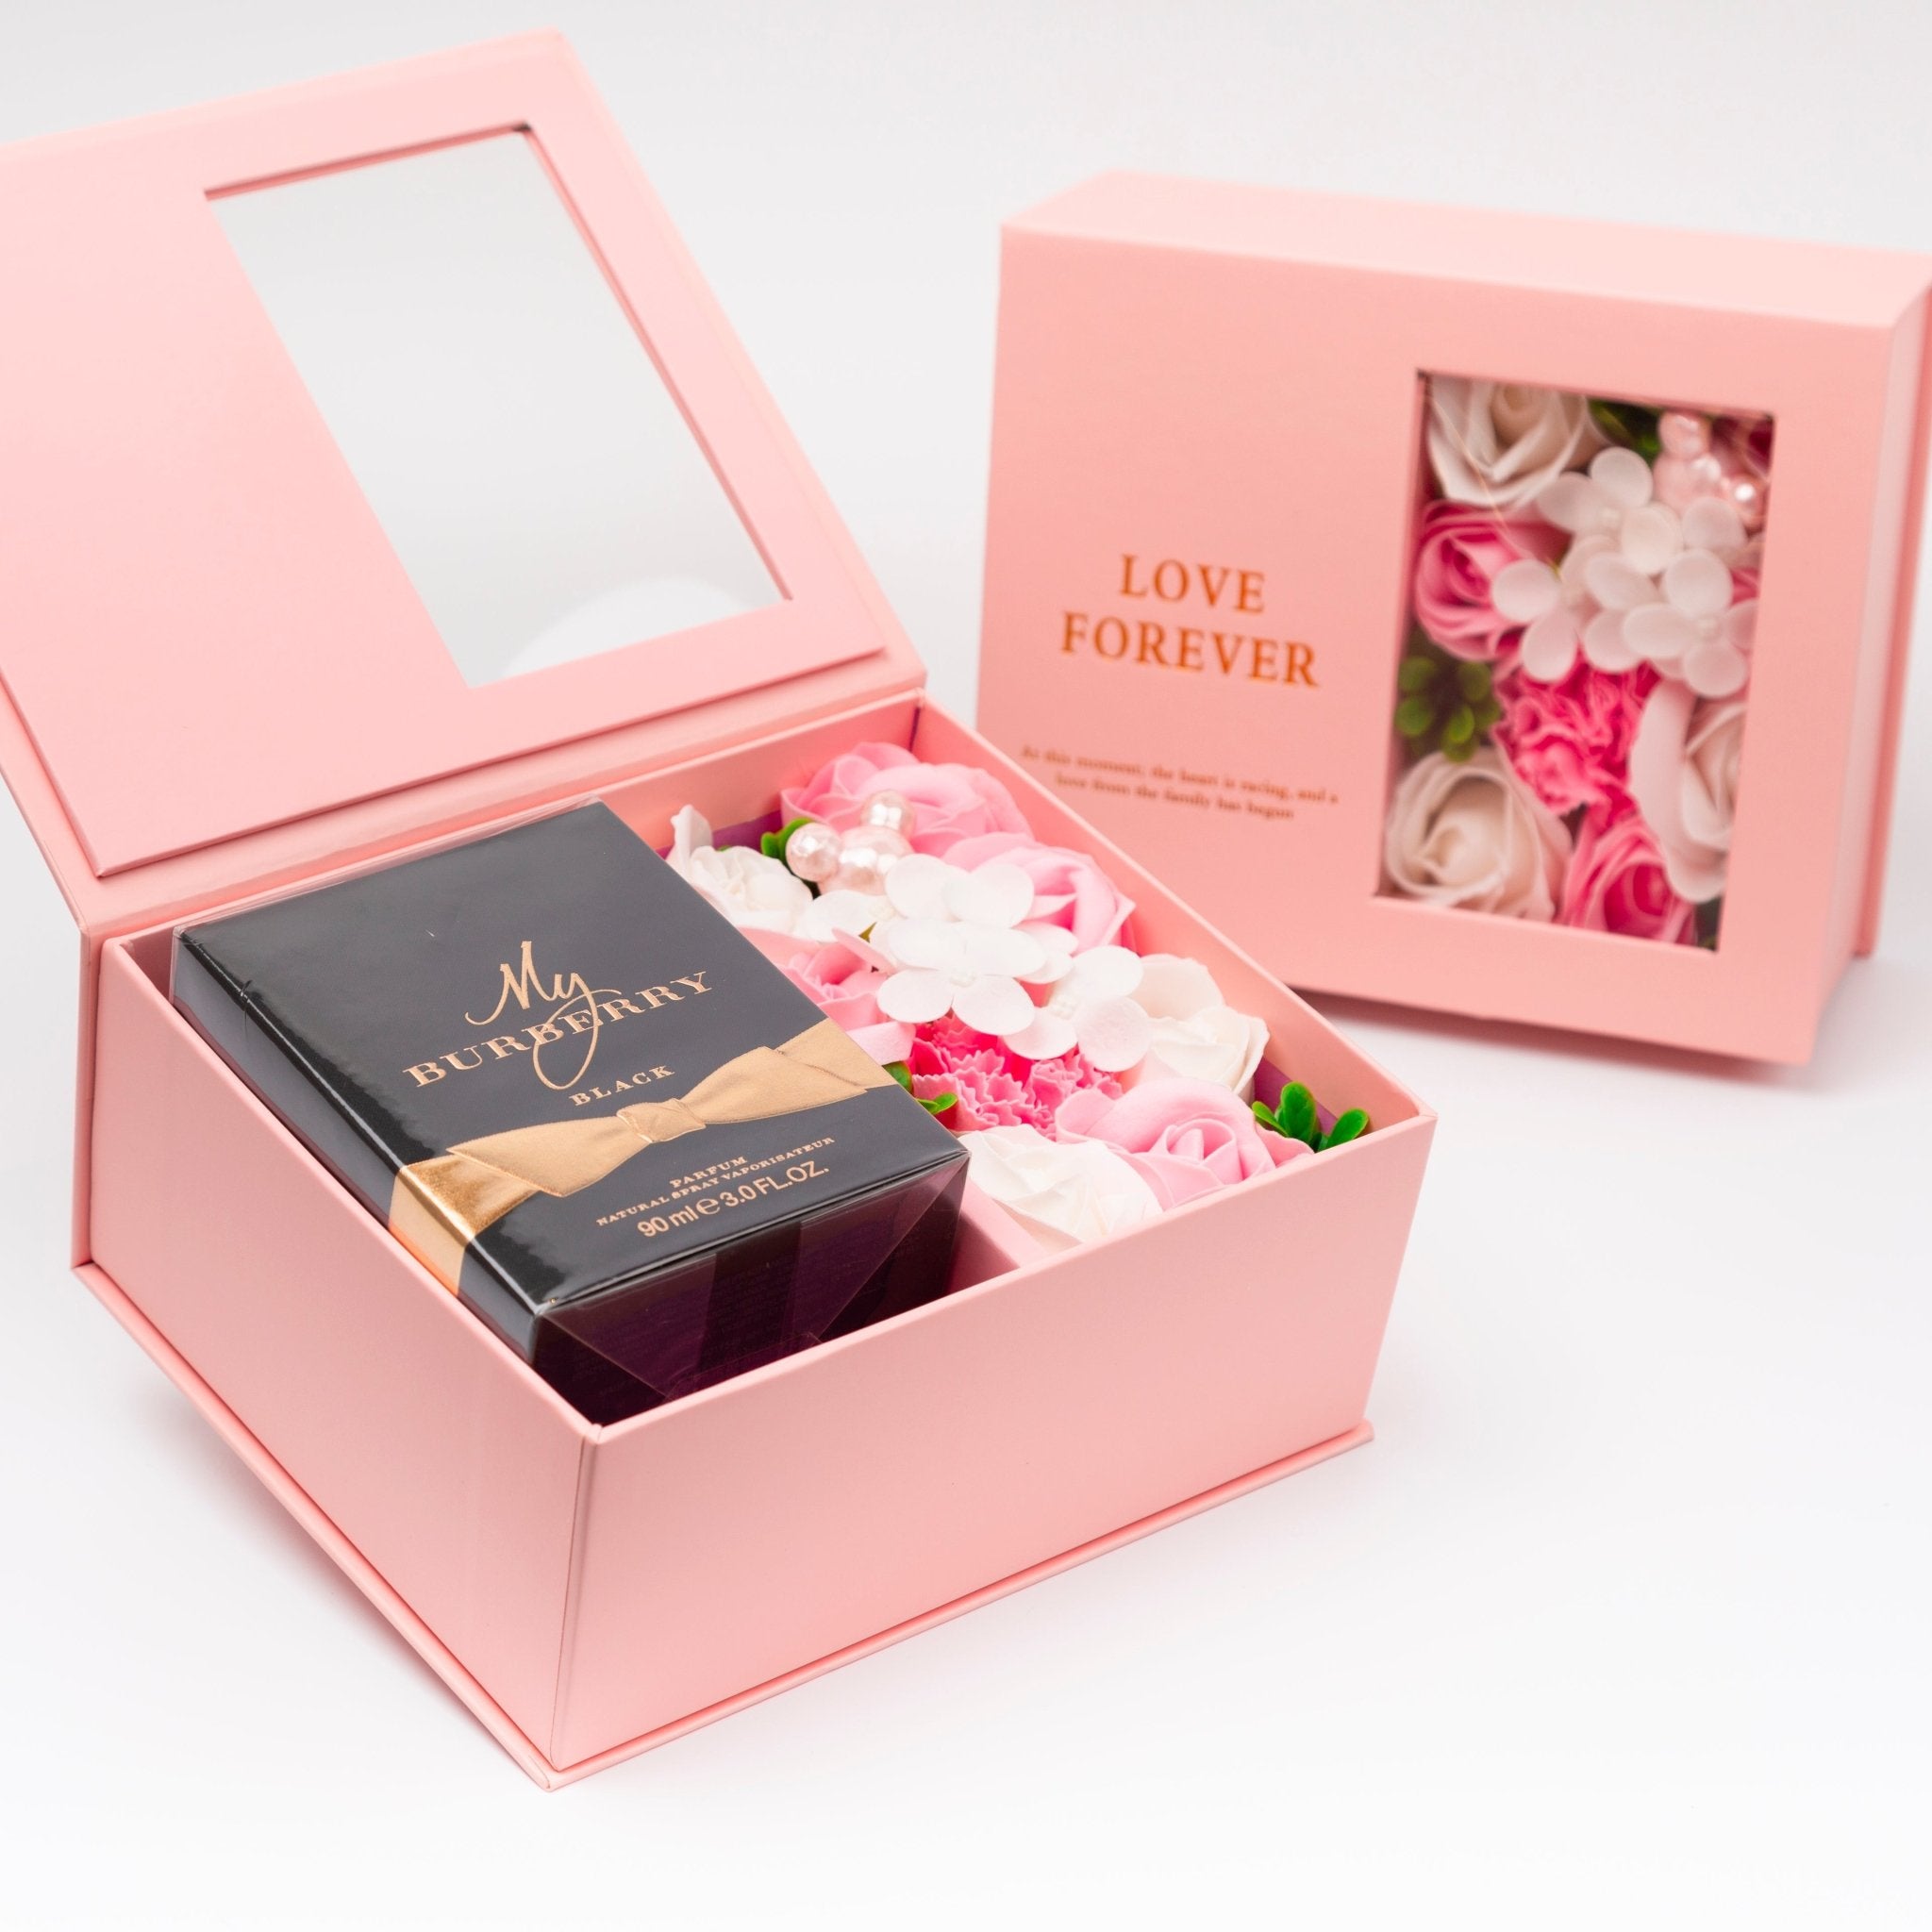 Flower Box - Perfume Gift For Women 25 - #shoFlower Box - Perfume Gift For Women 25p_name#Flower Box - Perfume Gift For Women 25Gift Boxes & TinsTakreemTakreem.joWomenPerfumeFlower Box - Perfume Gift For Women 25 - Takreem.jo